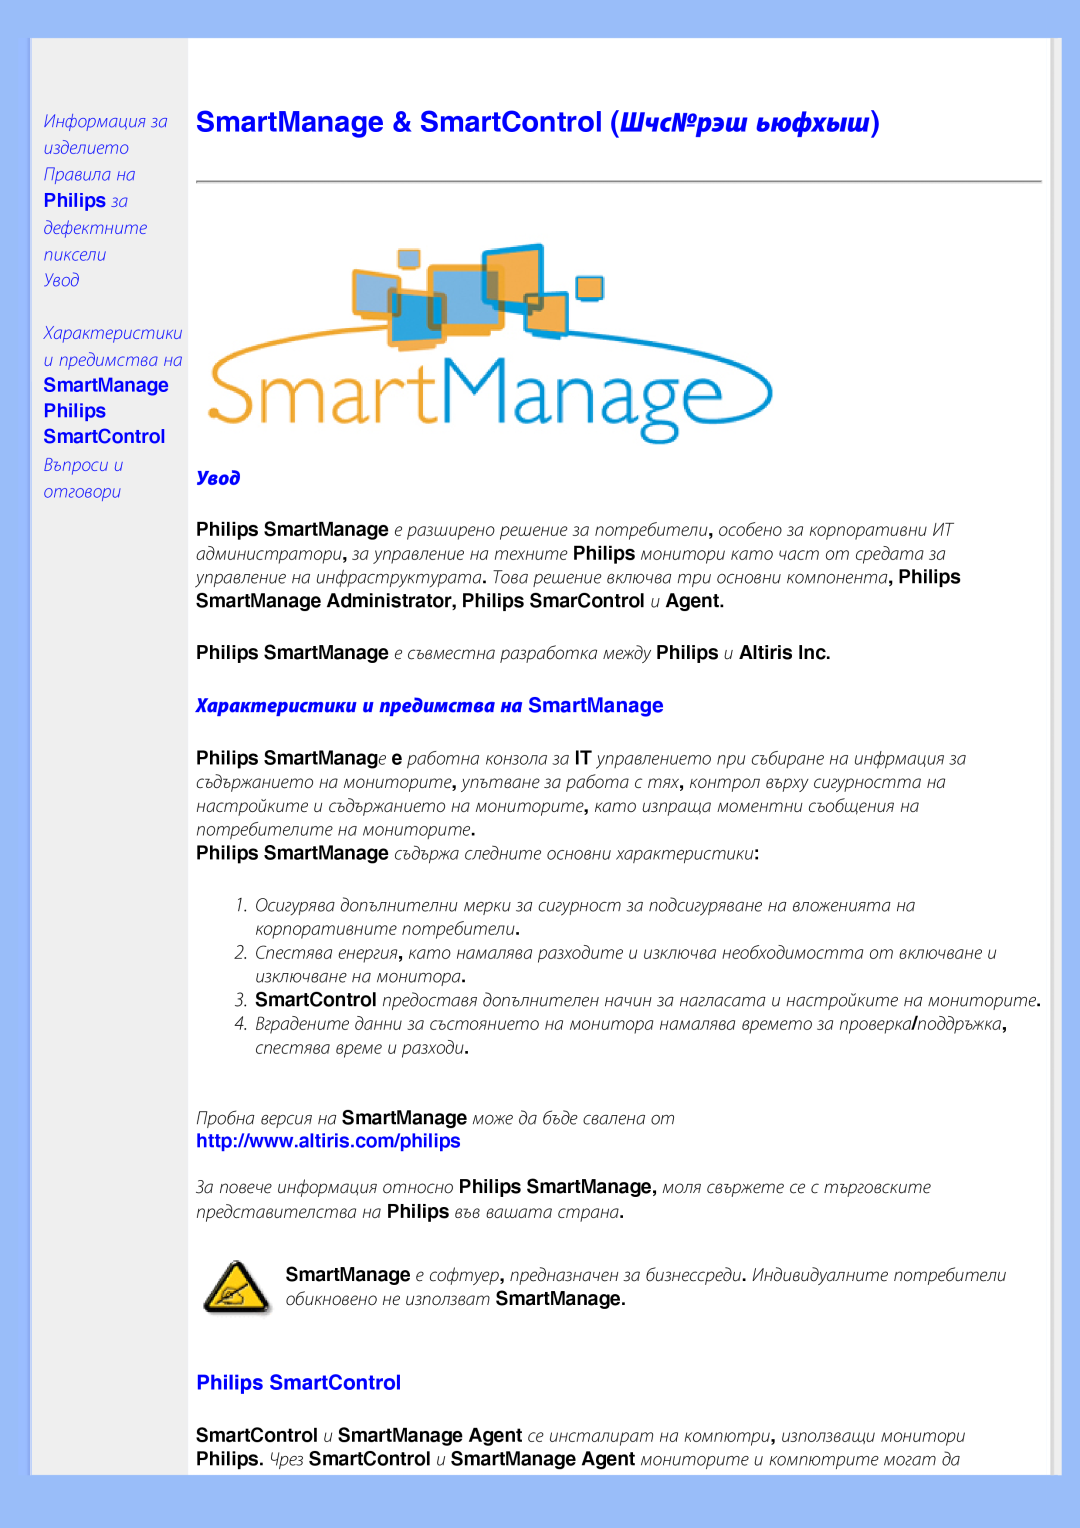 Philips 200BW8 SmartManage & SmartControl ШчсNoрэш ьюфхыш, Увод, Характеристики и предимства на SmartManage, Philips за 